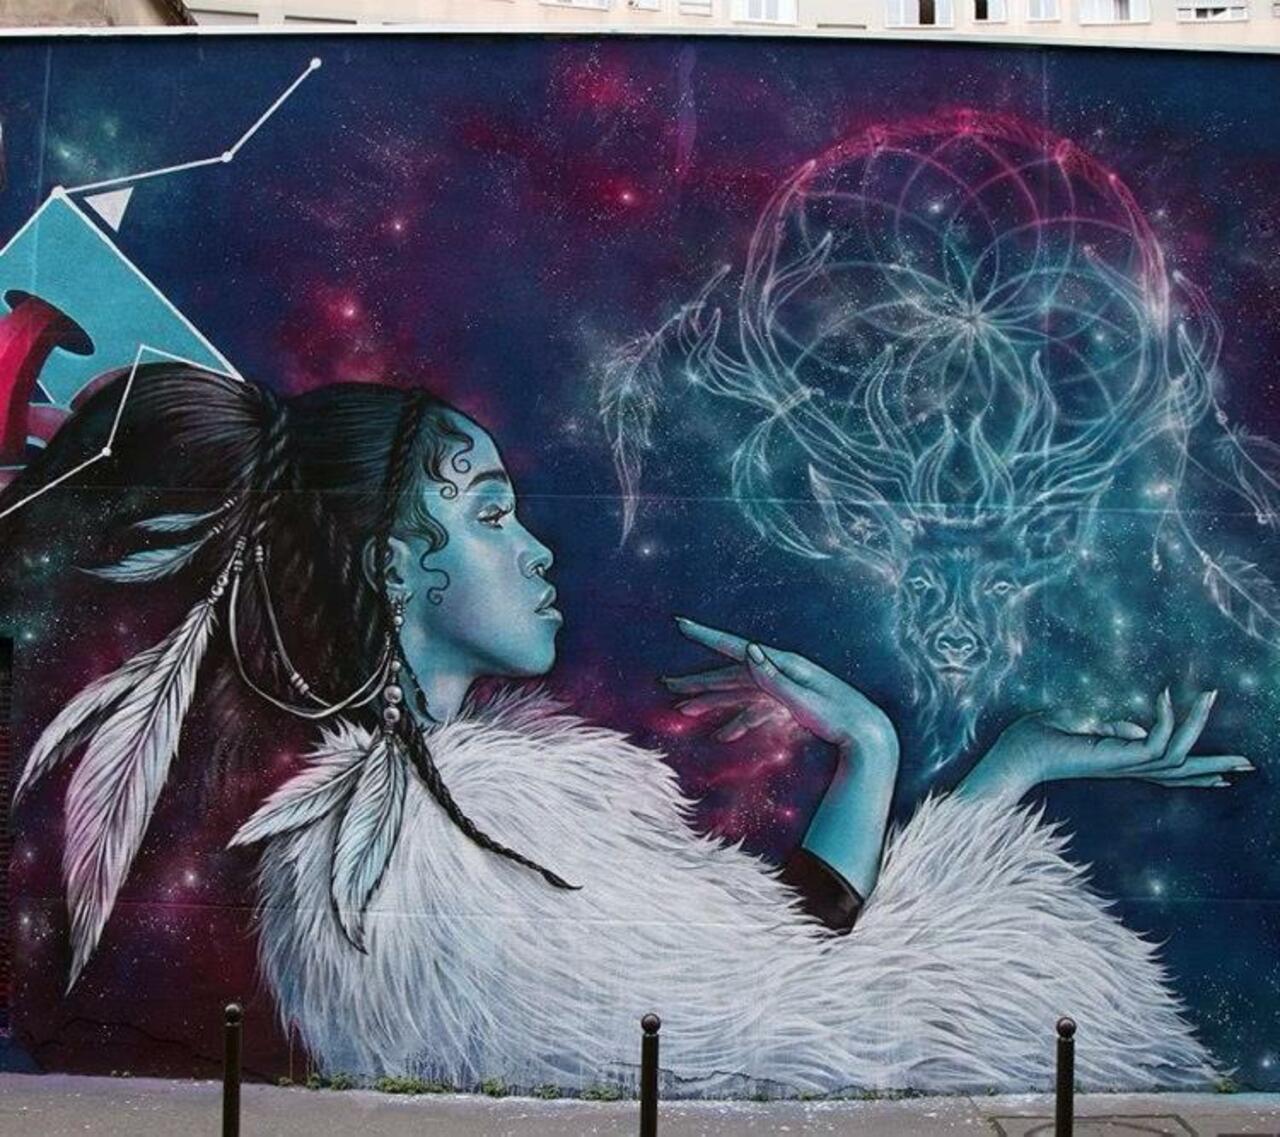 Artist Alex new Street Art mural located in Paris, France #art #mural #graffiti #streetart http://t.co/qPdFkiRlcV